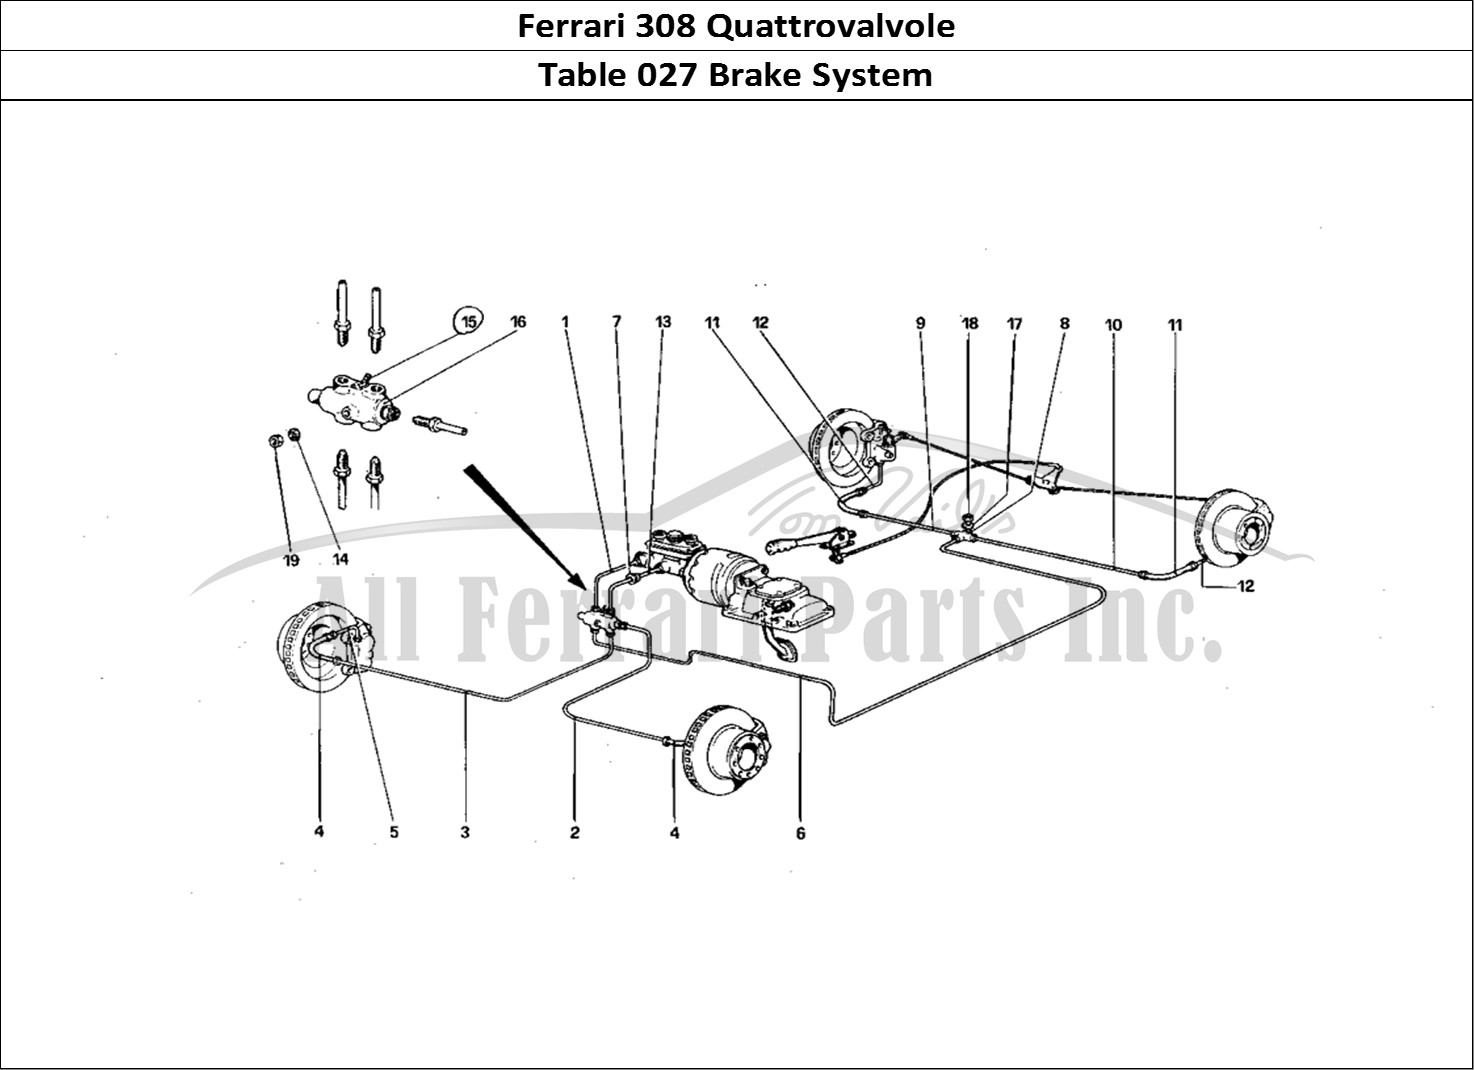 Ferrari Parts Ferrari 308 Quattrovalvole (1985) Page 027 Brake System